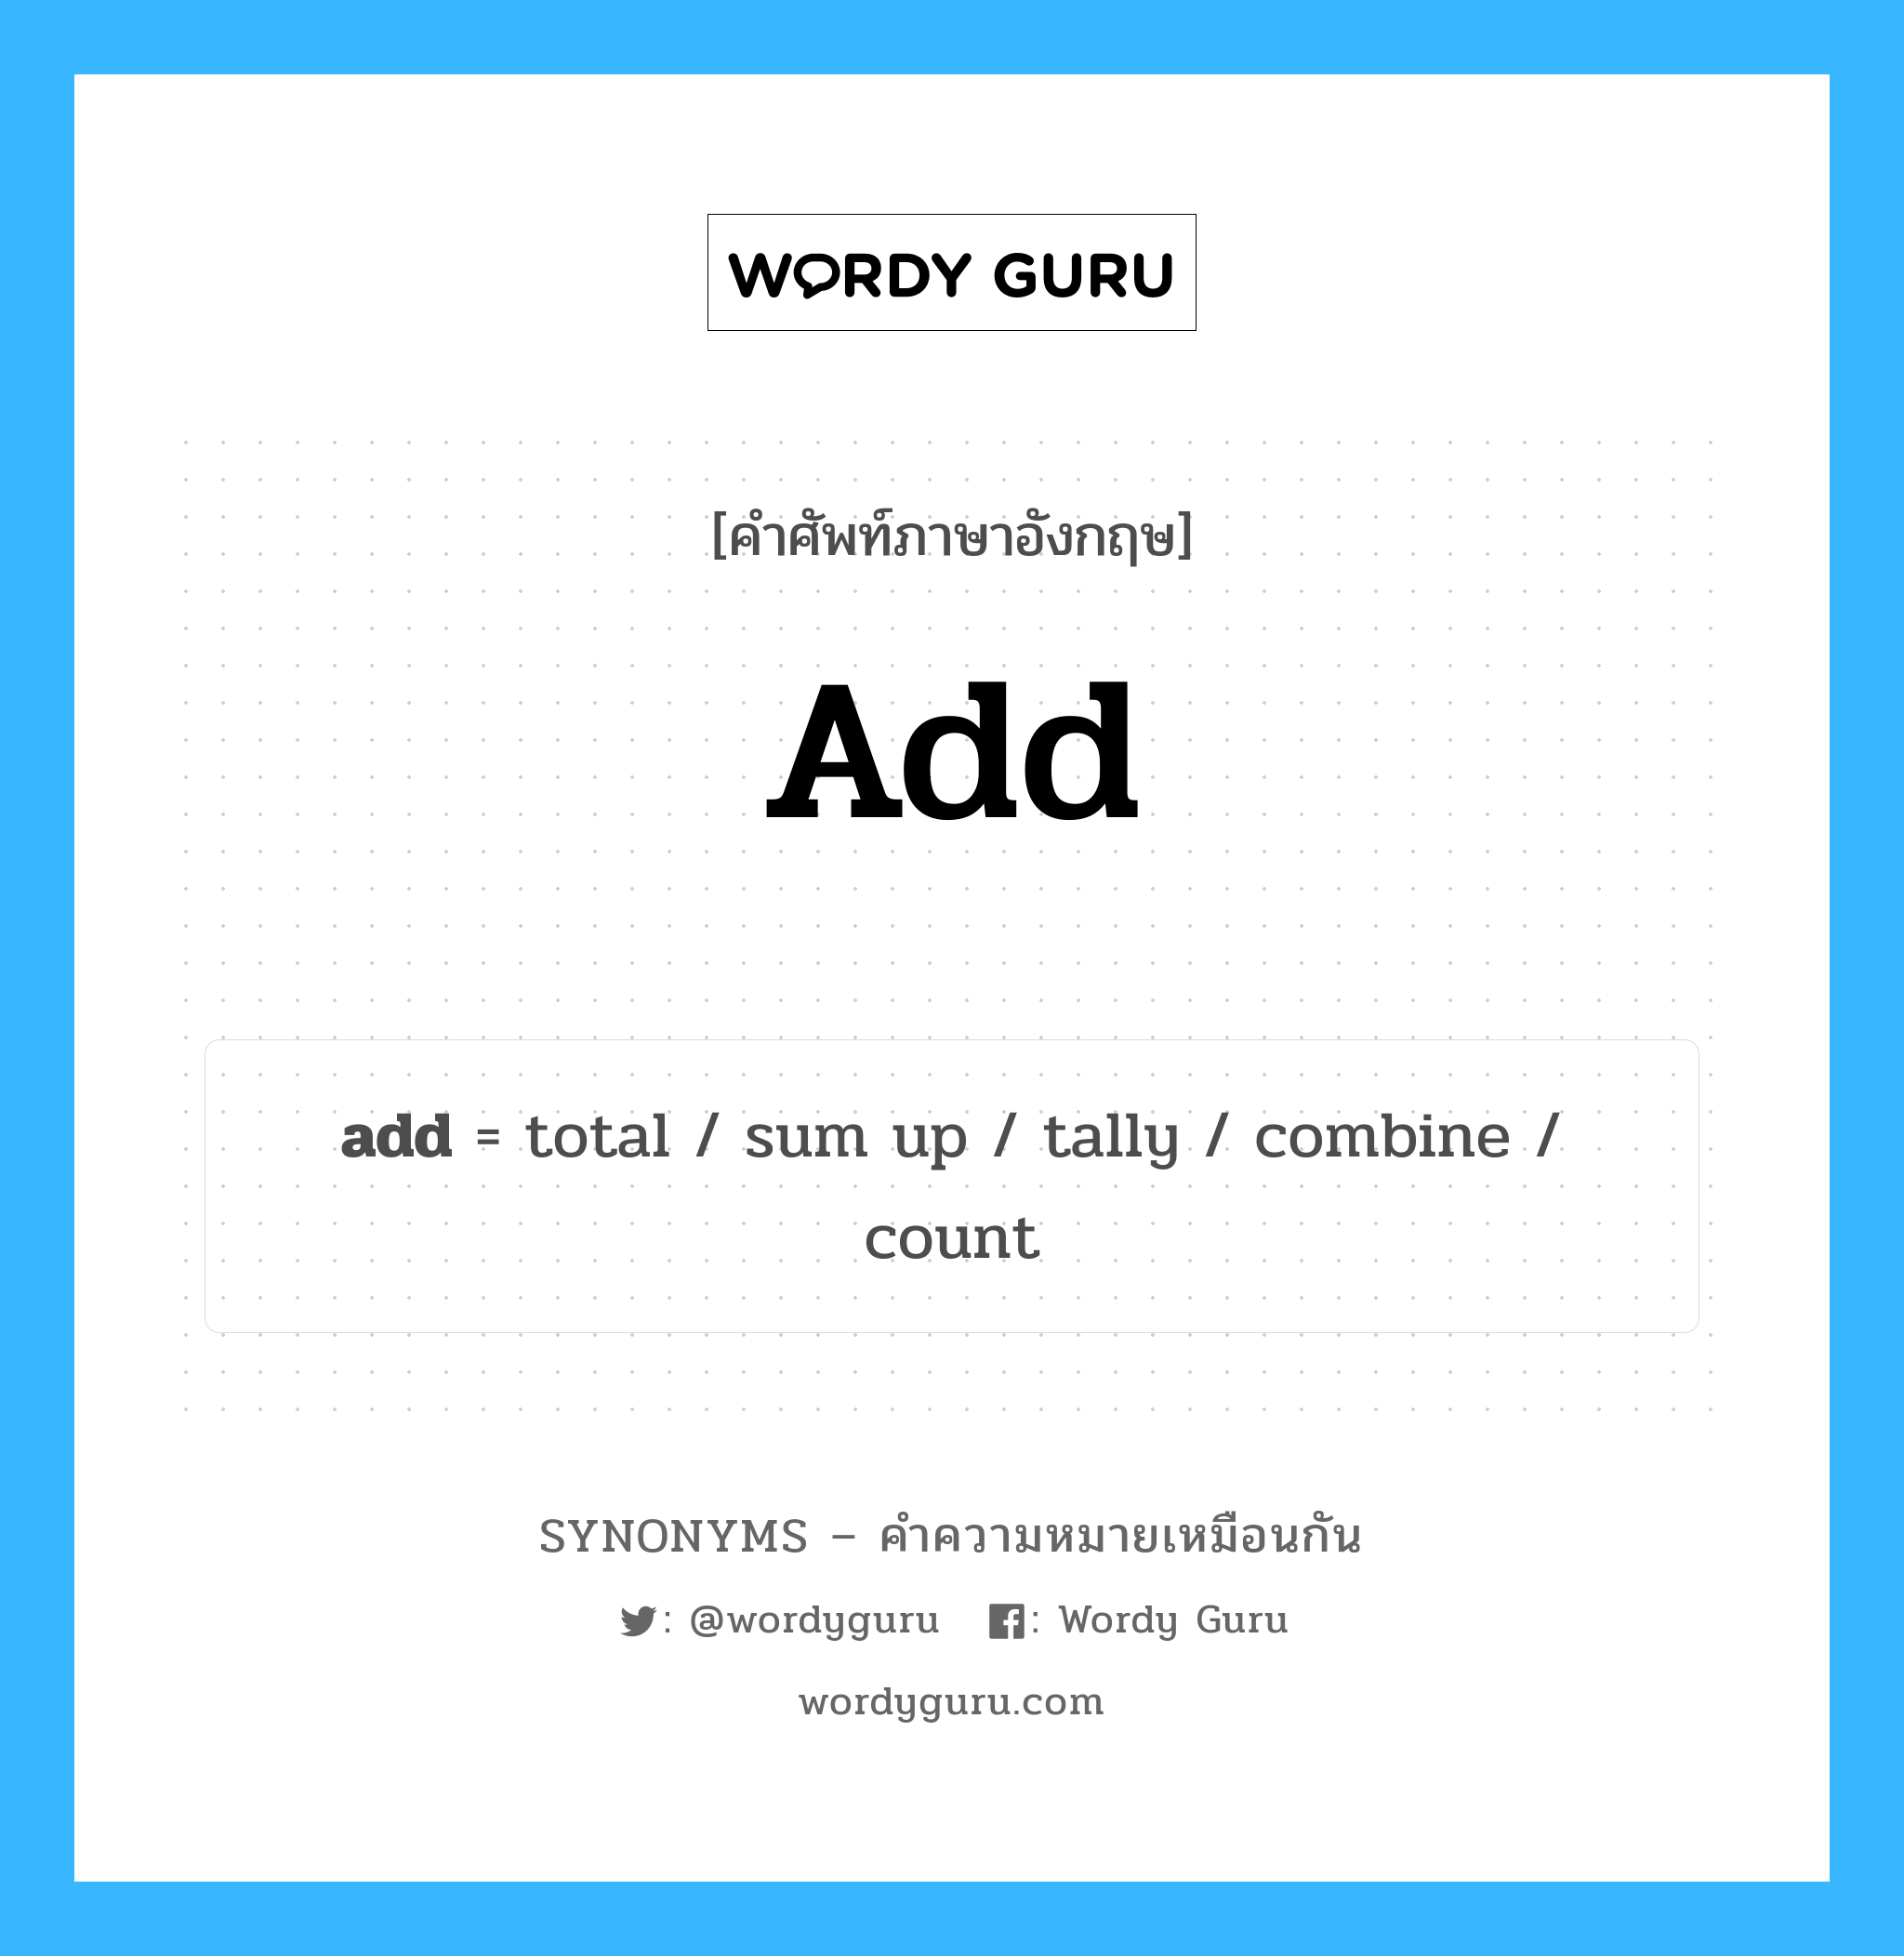 count เป็นหนึ่งใน add และมีคำอื่น ๆ อีกดังนี้, คำศัพท์ภาษาอังกฤษ count ความหมายคล้ายกันกับ add แปลว่า จำนวน หมวด add